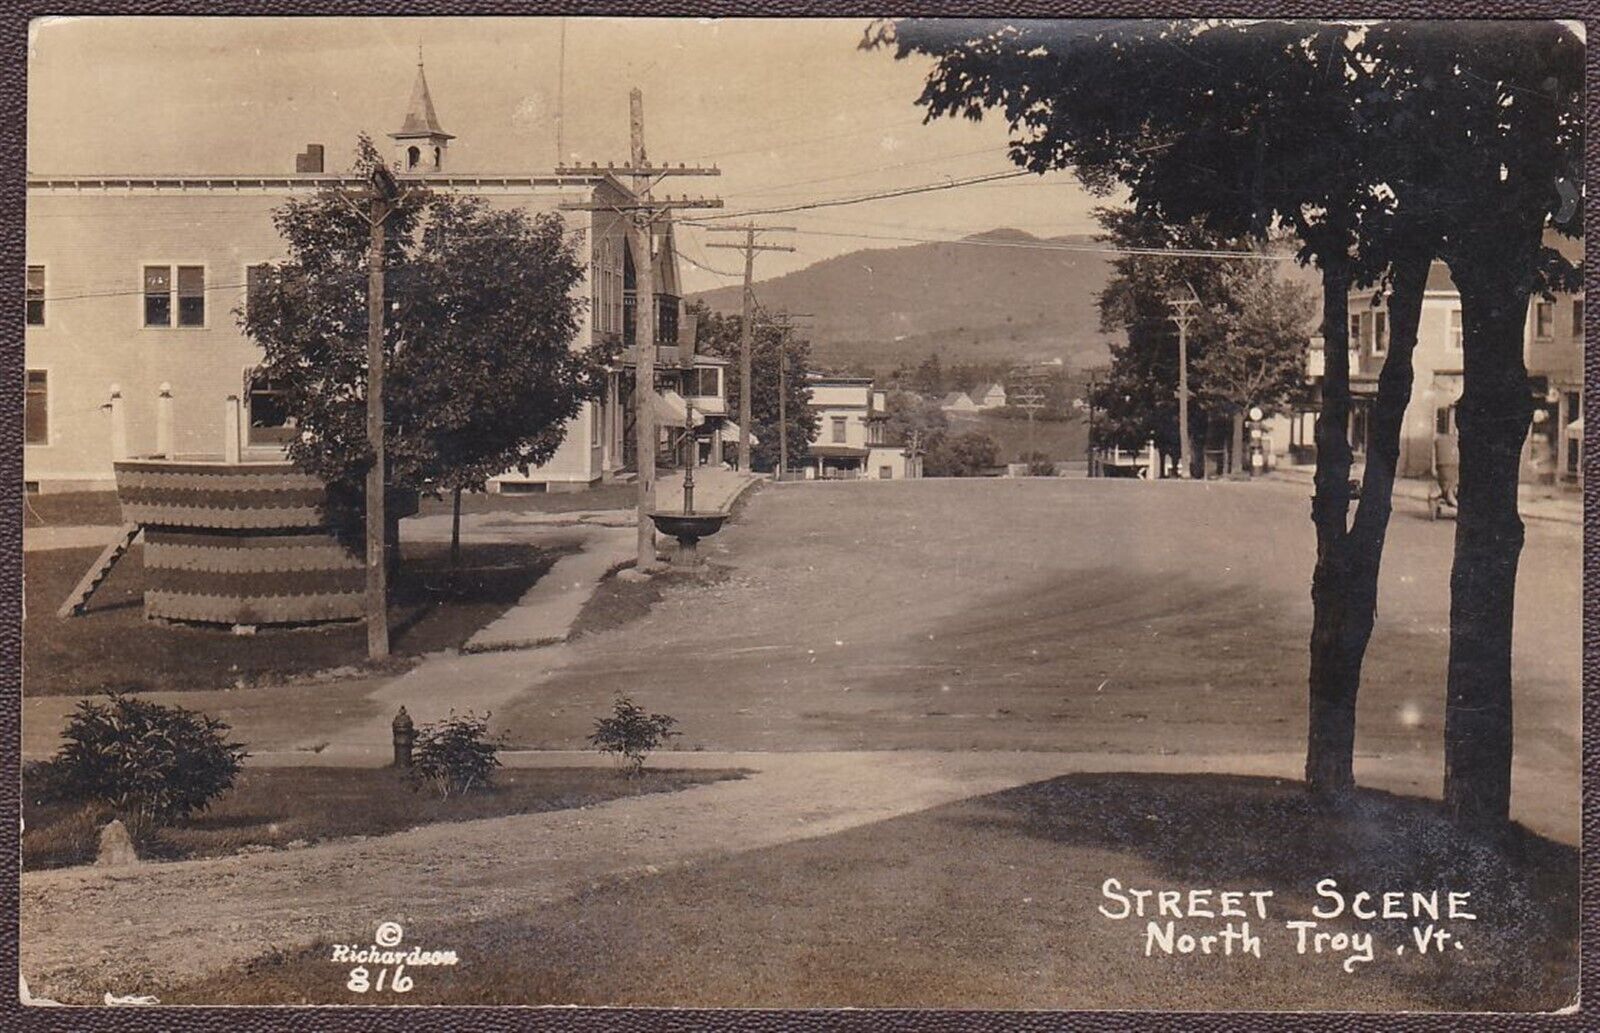 North Troy, Vermont RPPC Street Scene ca. 1930 - Richardson Photo #816